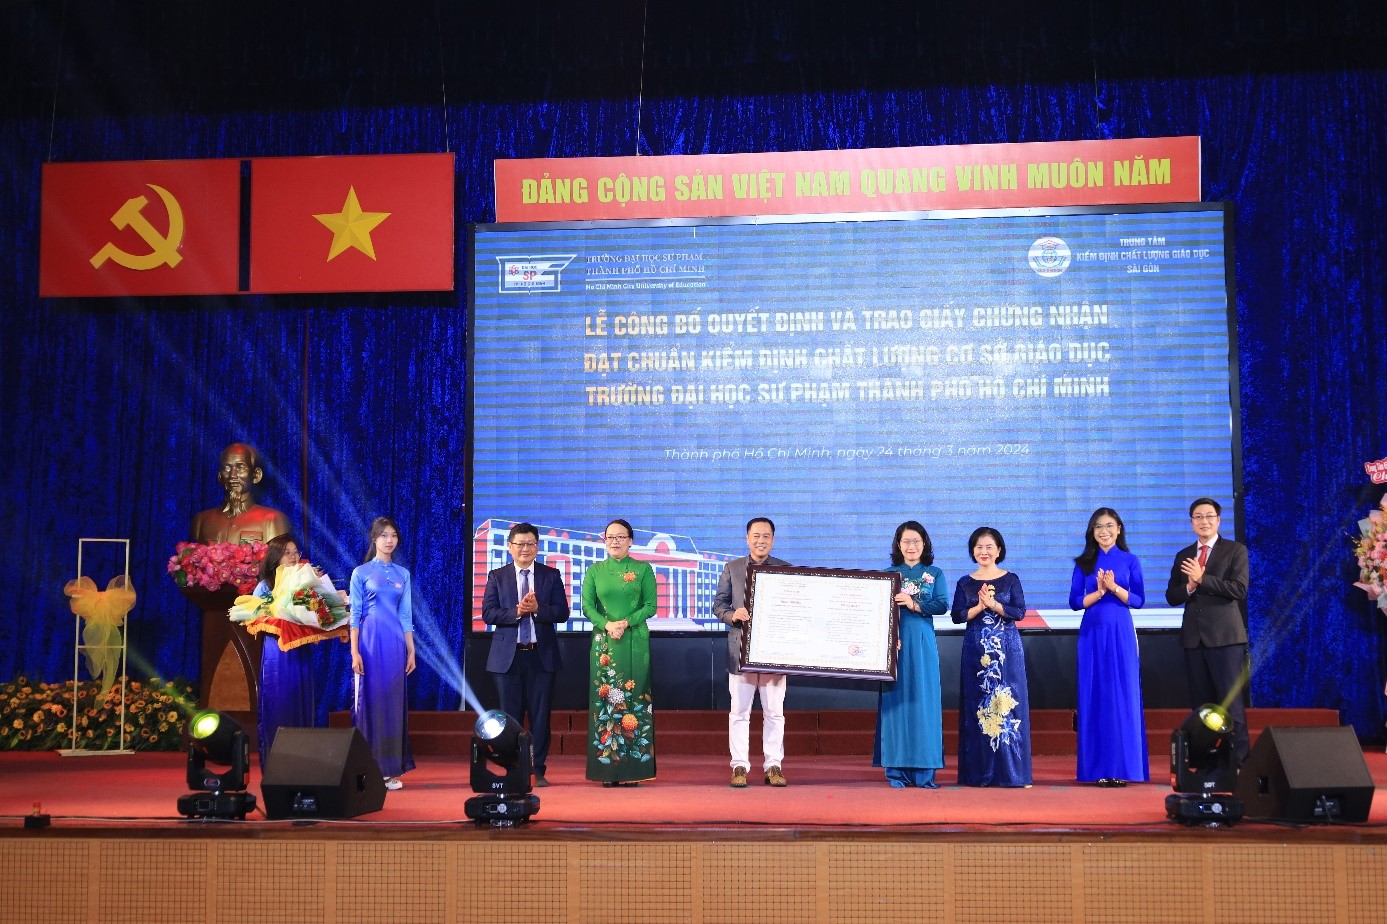 Trao Giấy chứng nhận đạt chuẩn kiểm định chất lượng cơ sở giáo dục cho Trường Đại học Sư phạm Thành phố Hồ Chí Minh